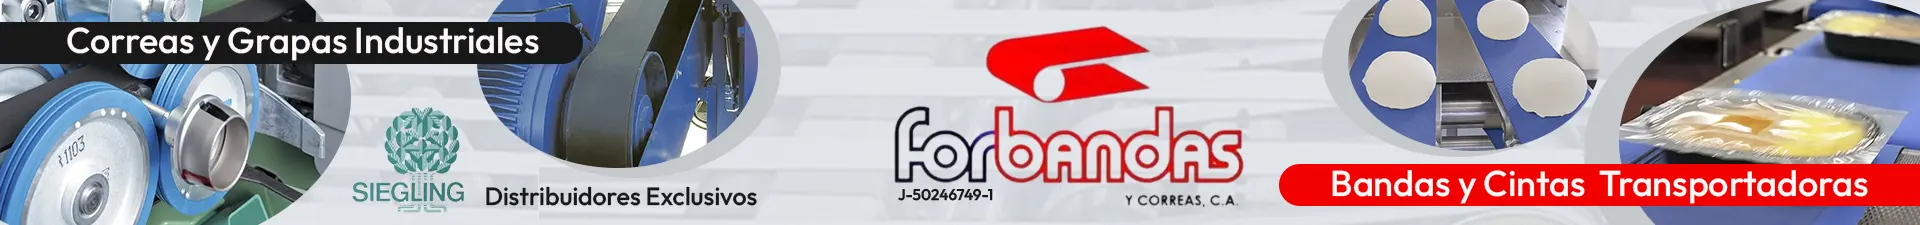 Imagen 1 del perfil de Forbandas